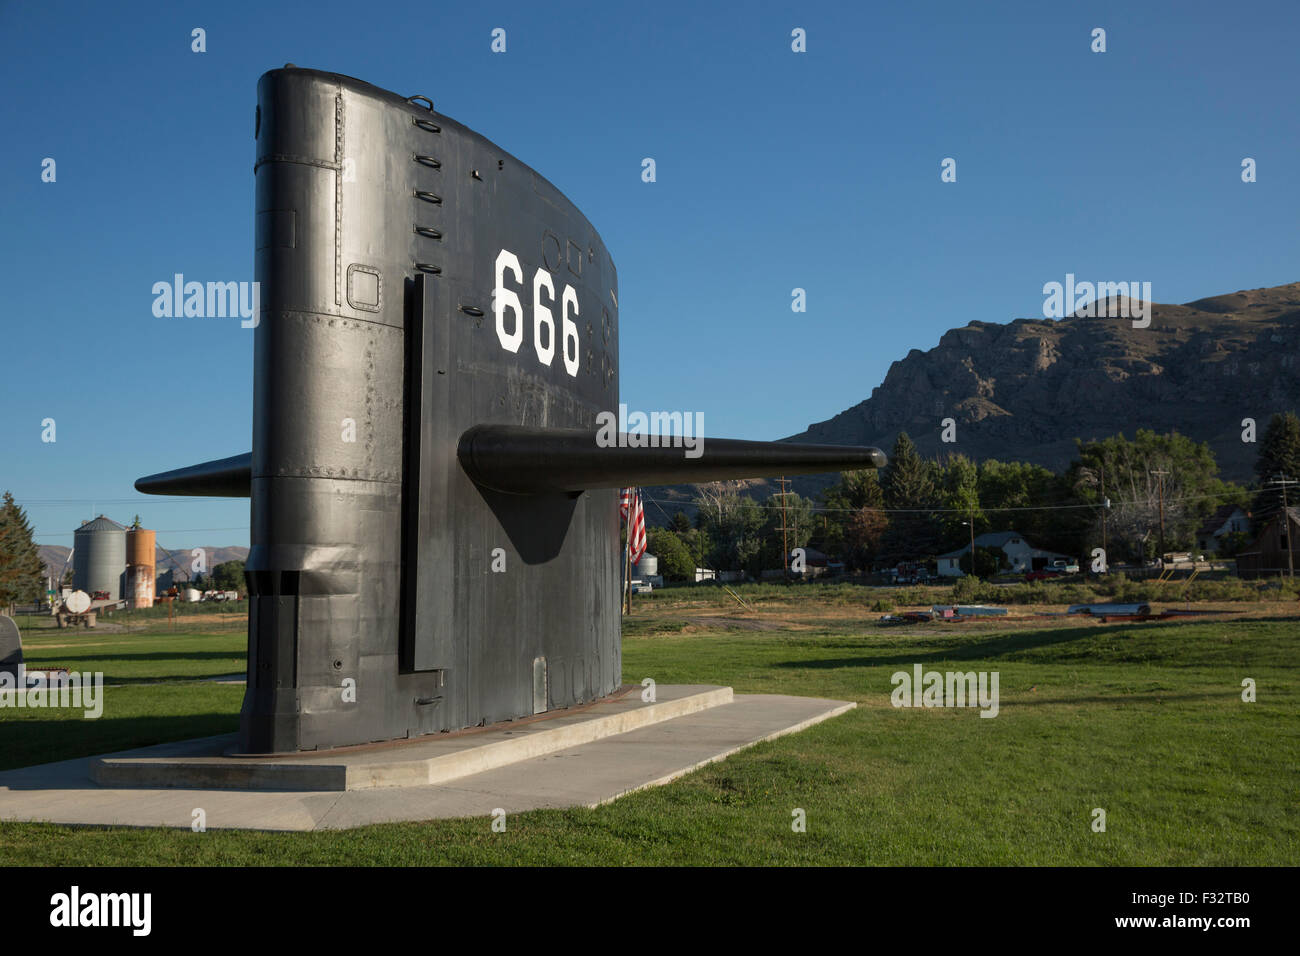 Arco, Idaho - La vela del sottomarino nucleare USS Hawkbill in un parco della città. Il recipiente è stato dismesso nel 2000. Foto Stock